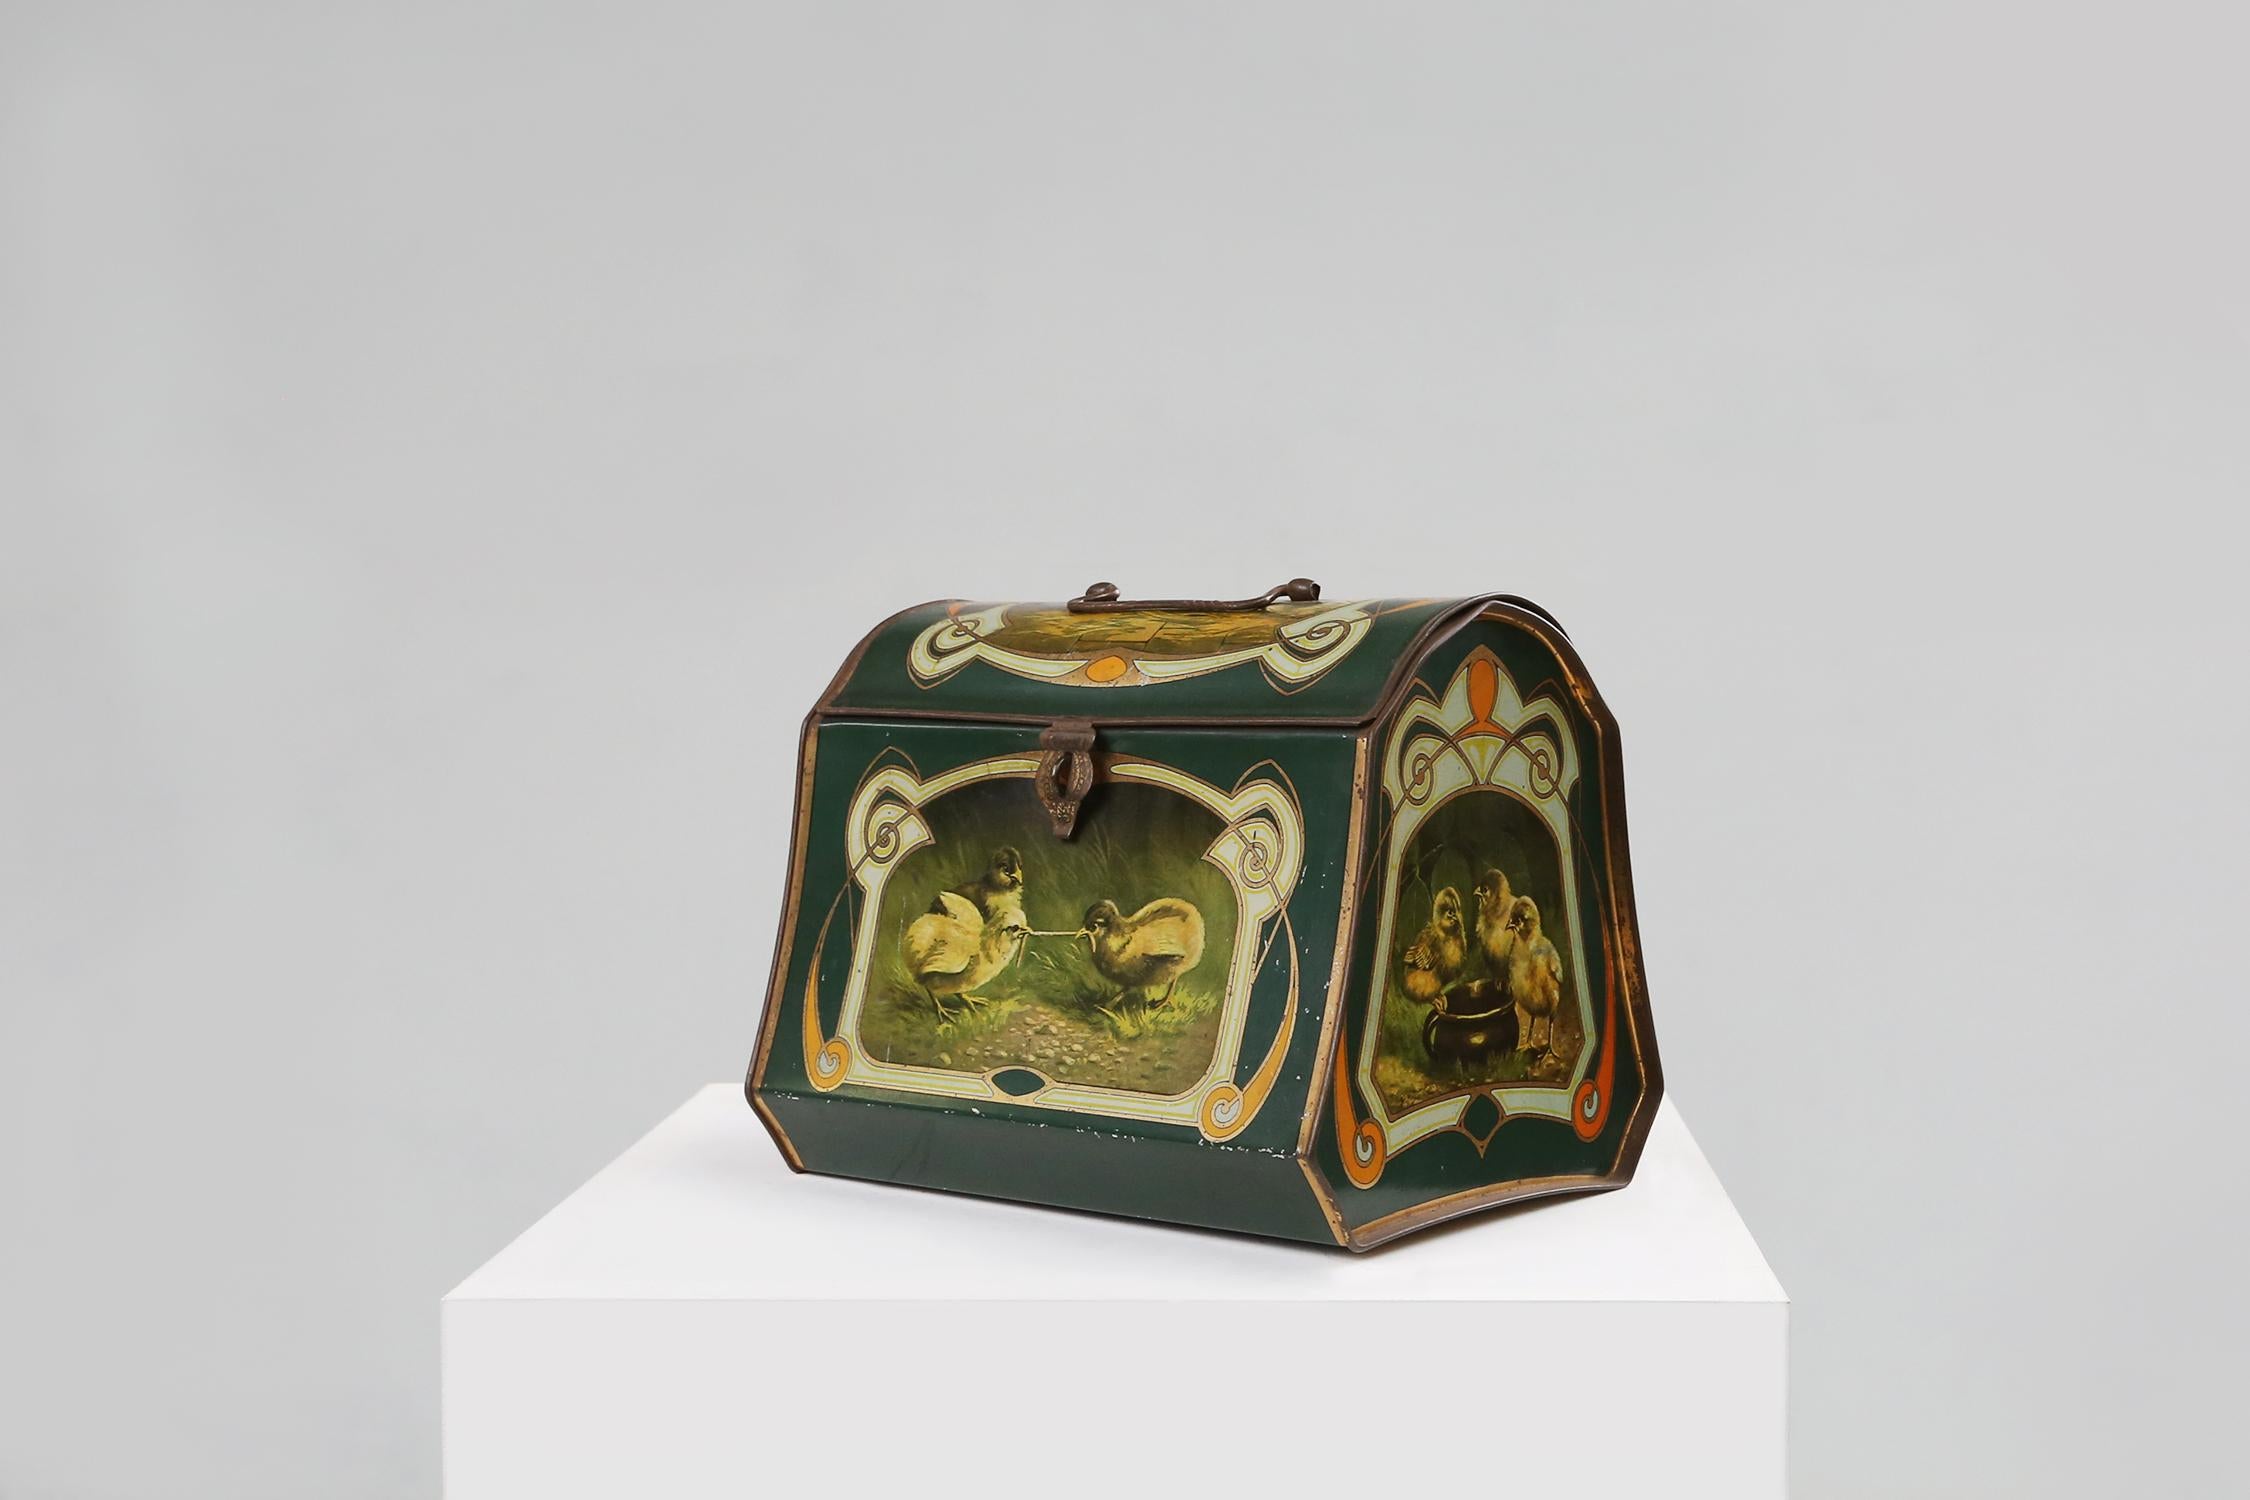 Une boîte en fer blanc de l'époque de l'Art nouveau est un bel exemple du mouvement artistique qui s'est épanoui en Europe à la fin du 19e et au début du 20e siècle. L'Art nouveau se caractérise par des lignes gracieuses, des formes organiques, des